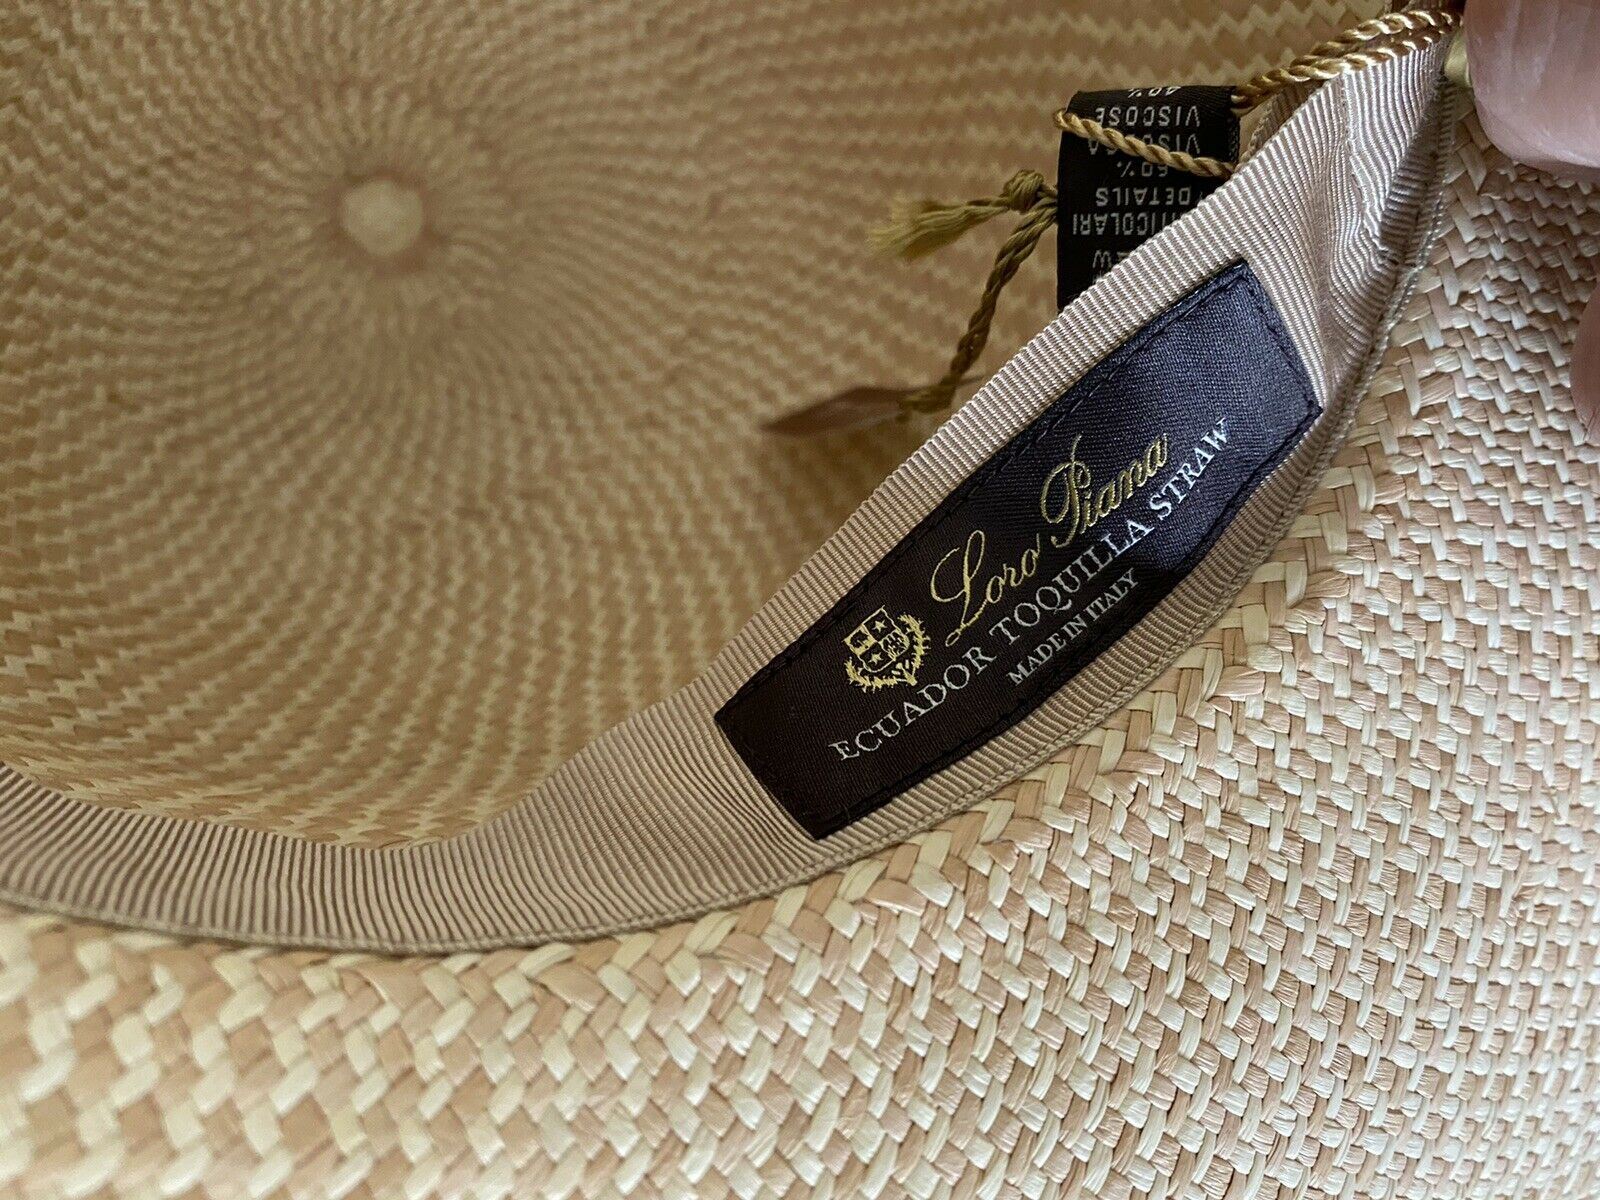 NWT $750 Loro Piana Women La Fossette Panama Straw Hat Natural Sand M Italy